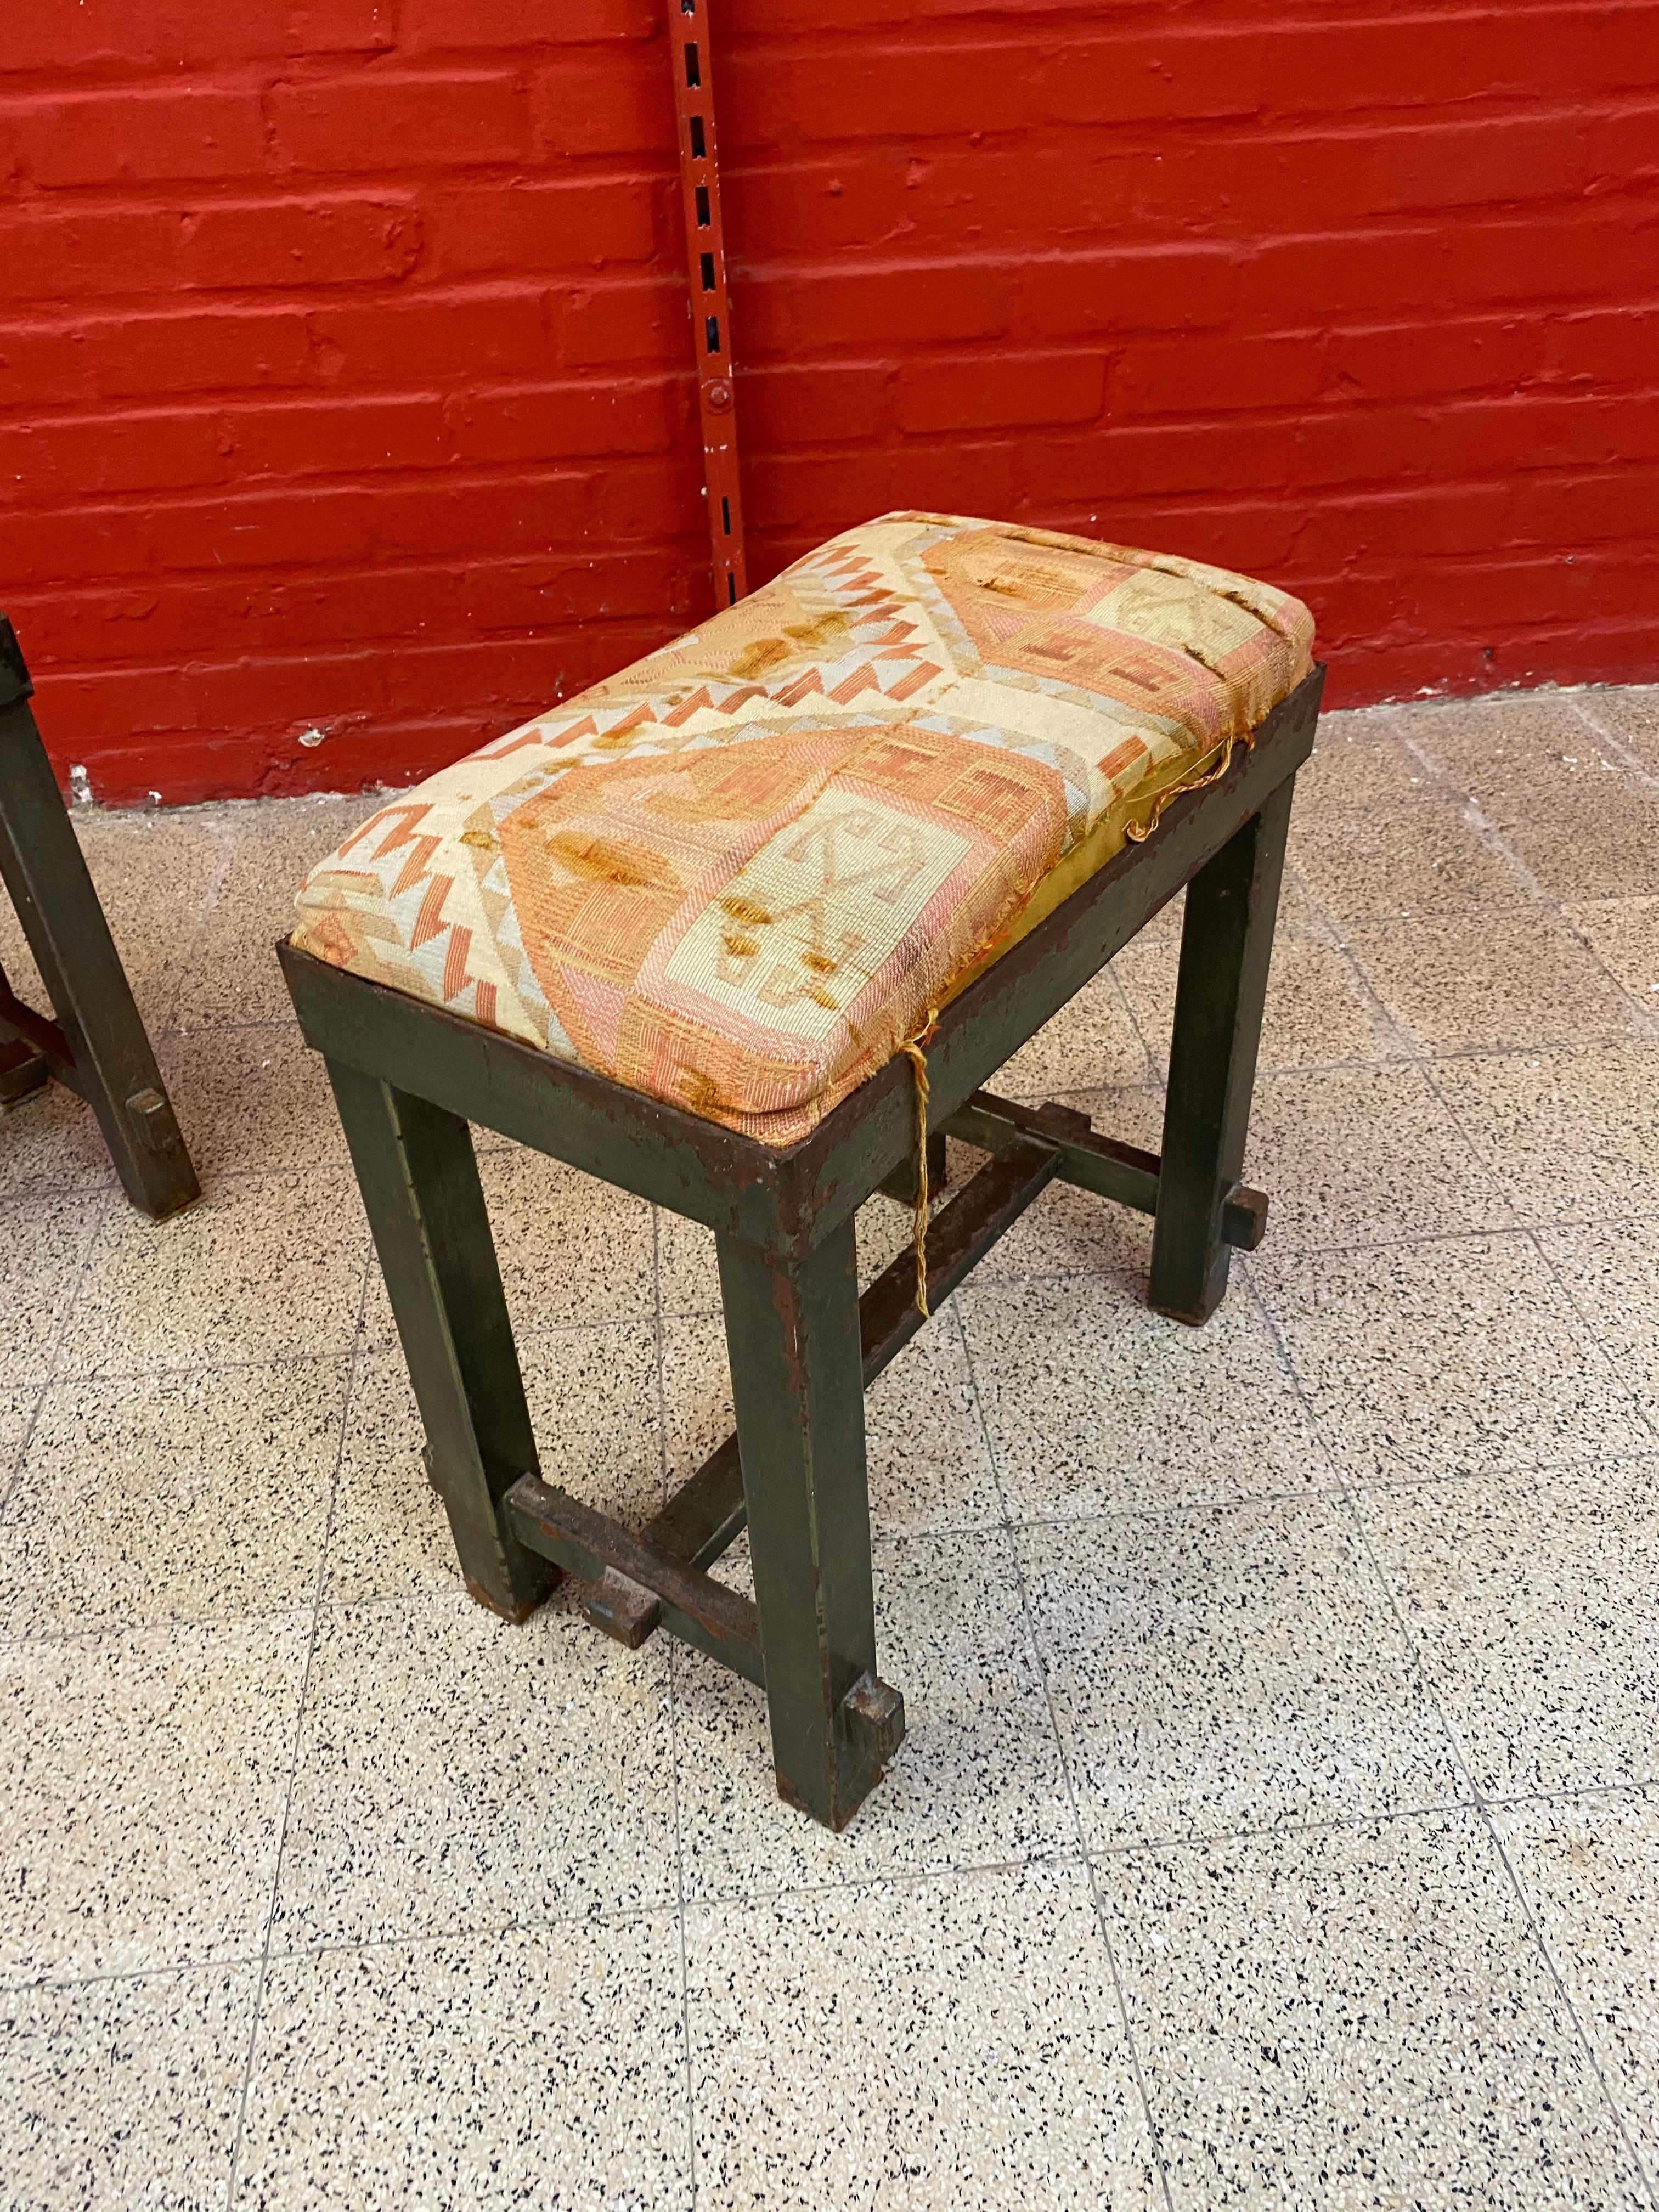 2 Hocker aus lackiertem Metall, im Stil von Jacques Adnet, um 1940/1950.
viele Lücken und Abnutzungserscheinungen des Lacks. 
1 Tisch, ein Sideboard und 6 Stühle sind ebenfalls erhältlich und werden in anderen Anzeigen präsentiert.